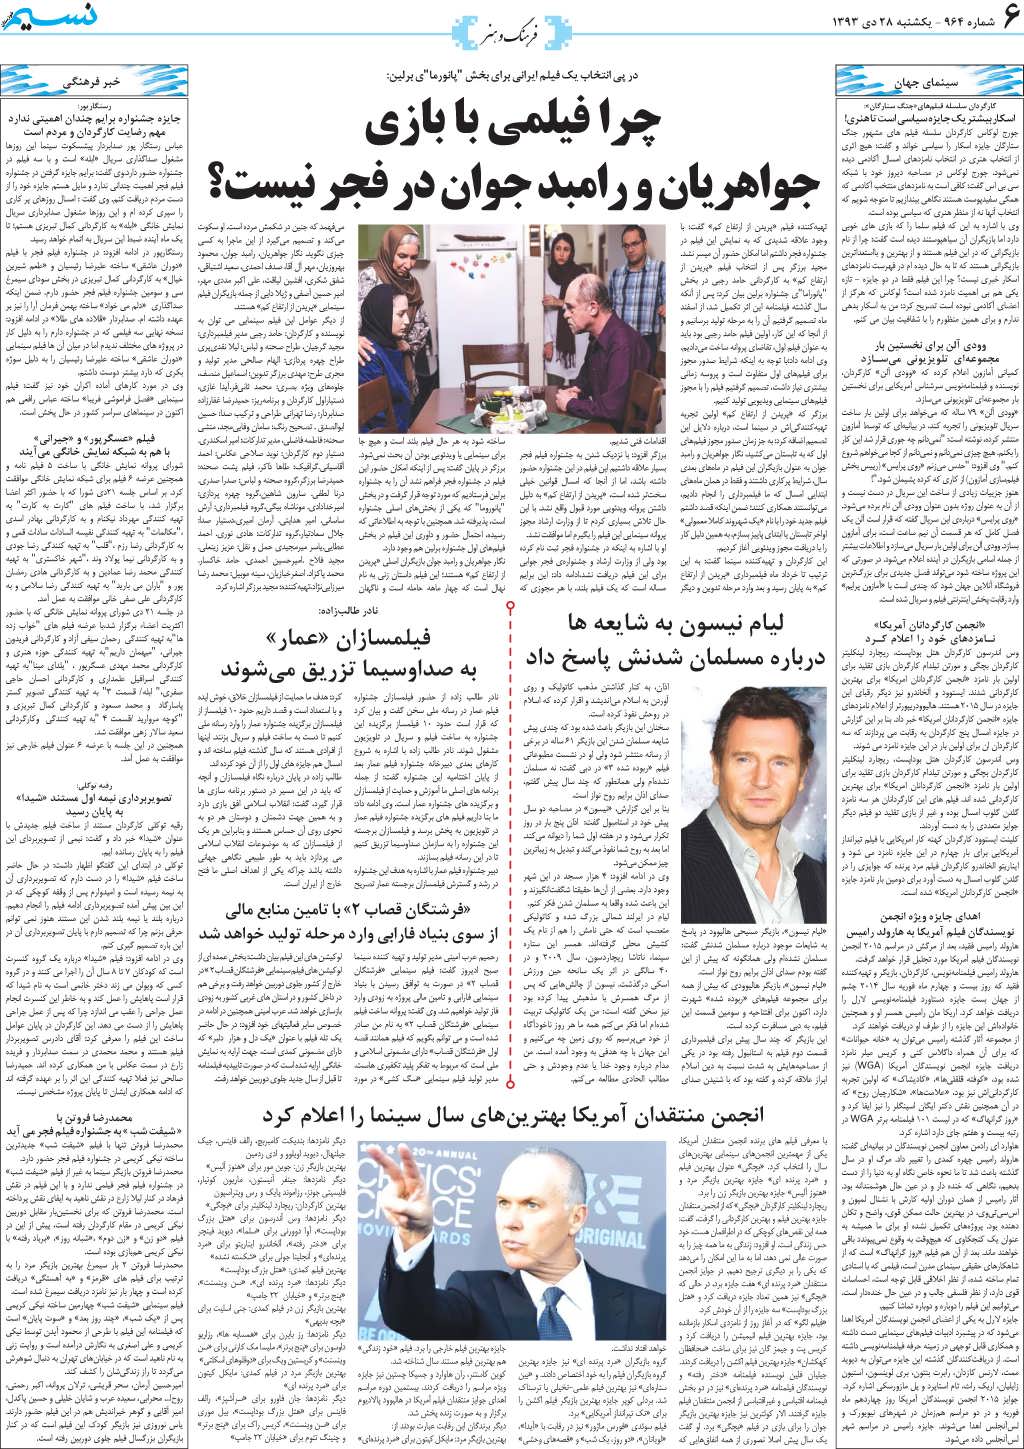 صفحه فرهنگ و هنر روزنامه نسیم شماره 964